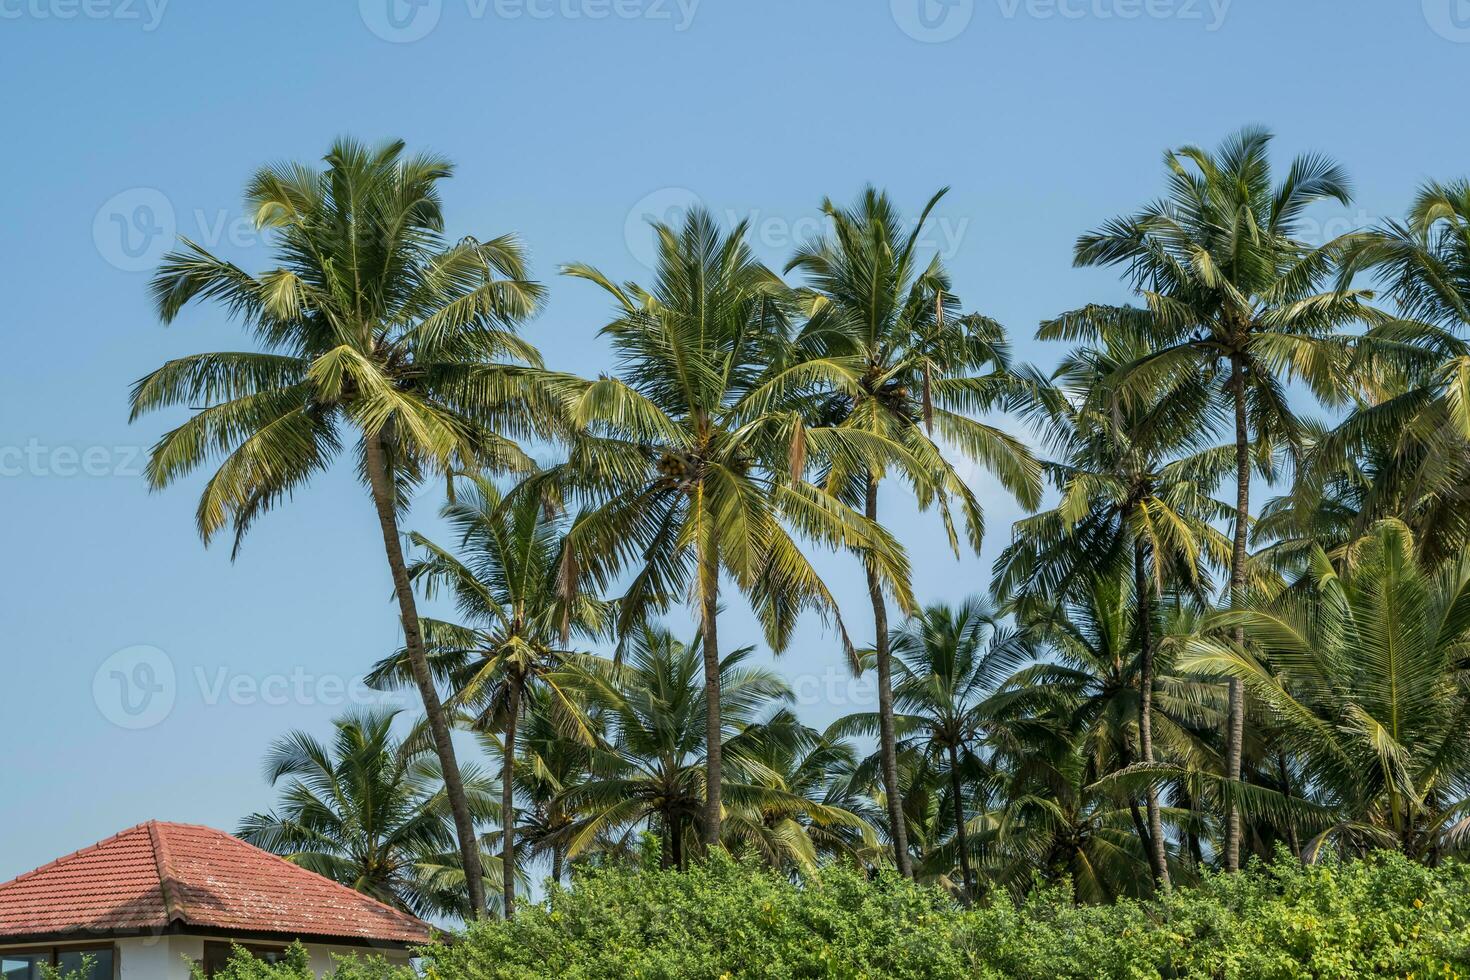 Hôtel ou vacances Accueil dans jungle parmi paume des arbres sur océan photo